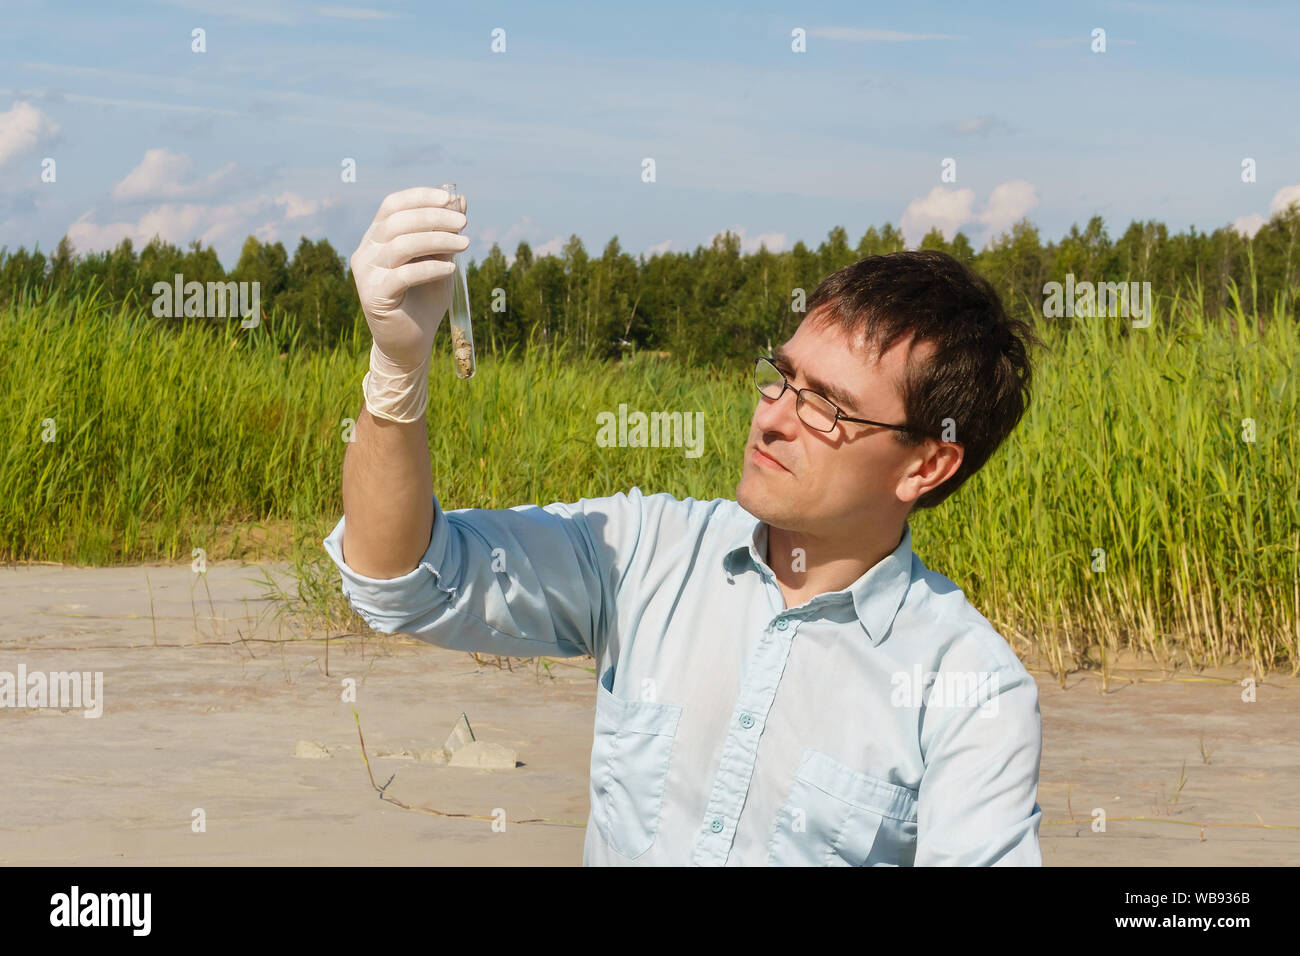 Hombre ecologista ni biólogo examina una muestra de suelo en un tubo de ensayo contra un pantano seco Foto de stock